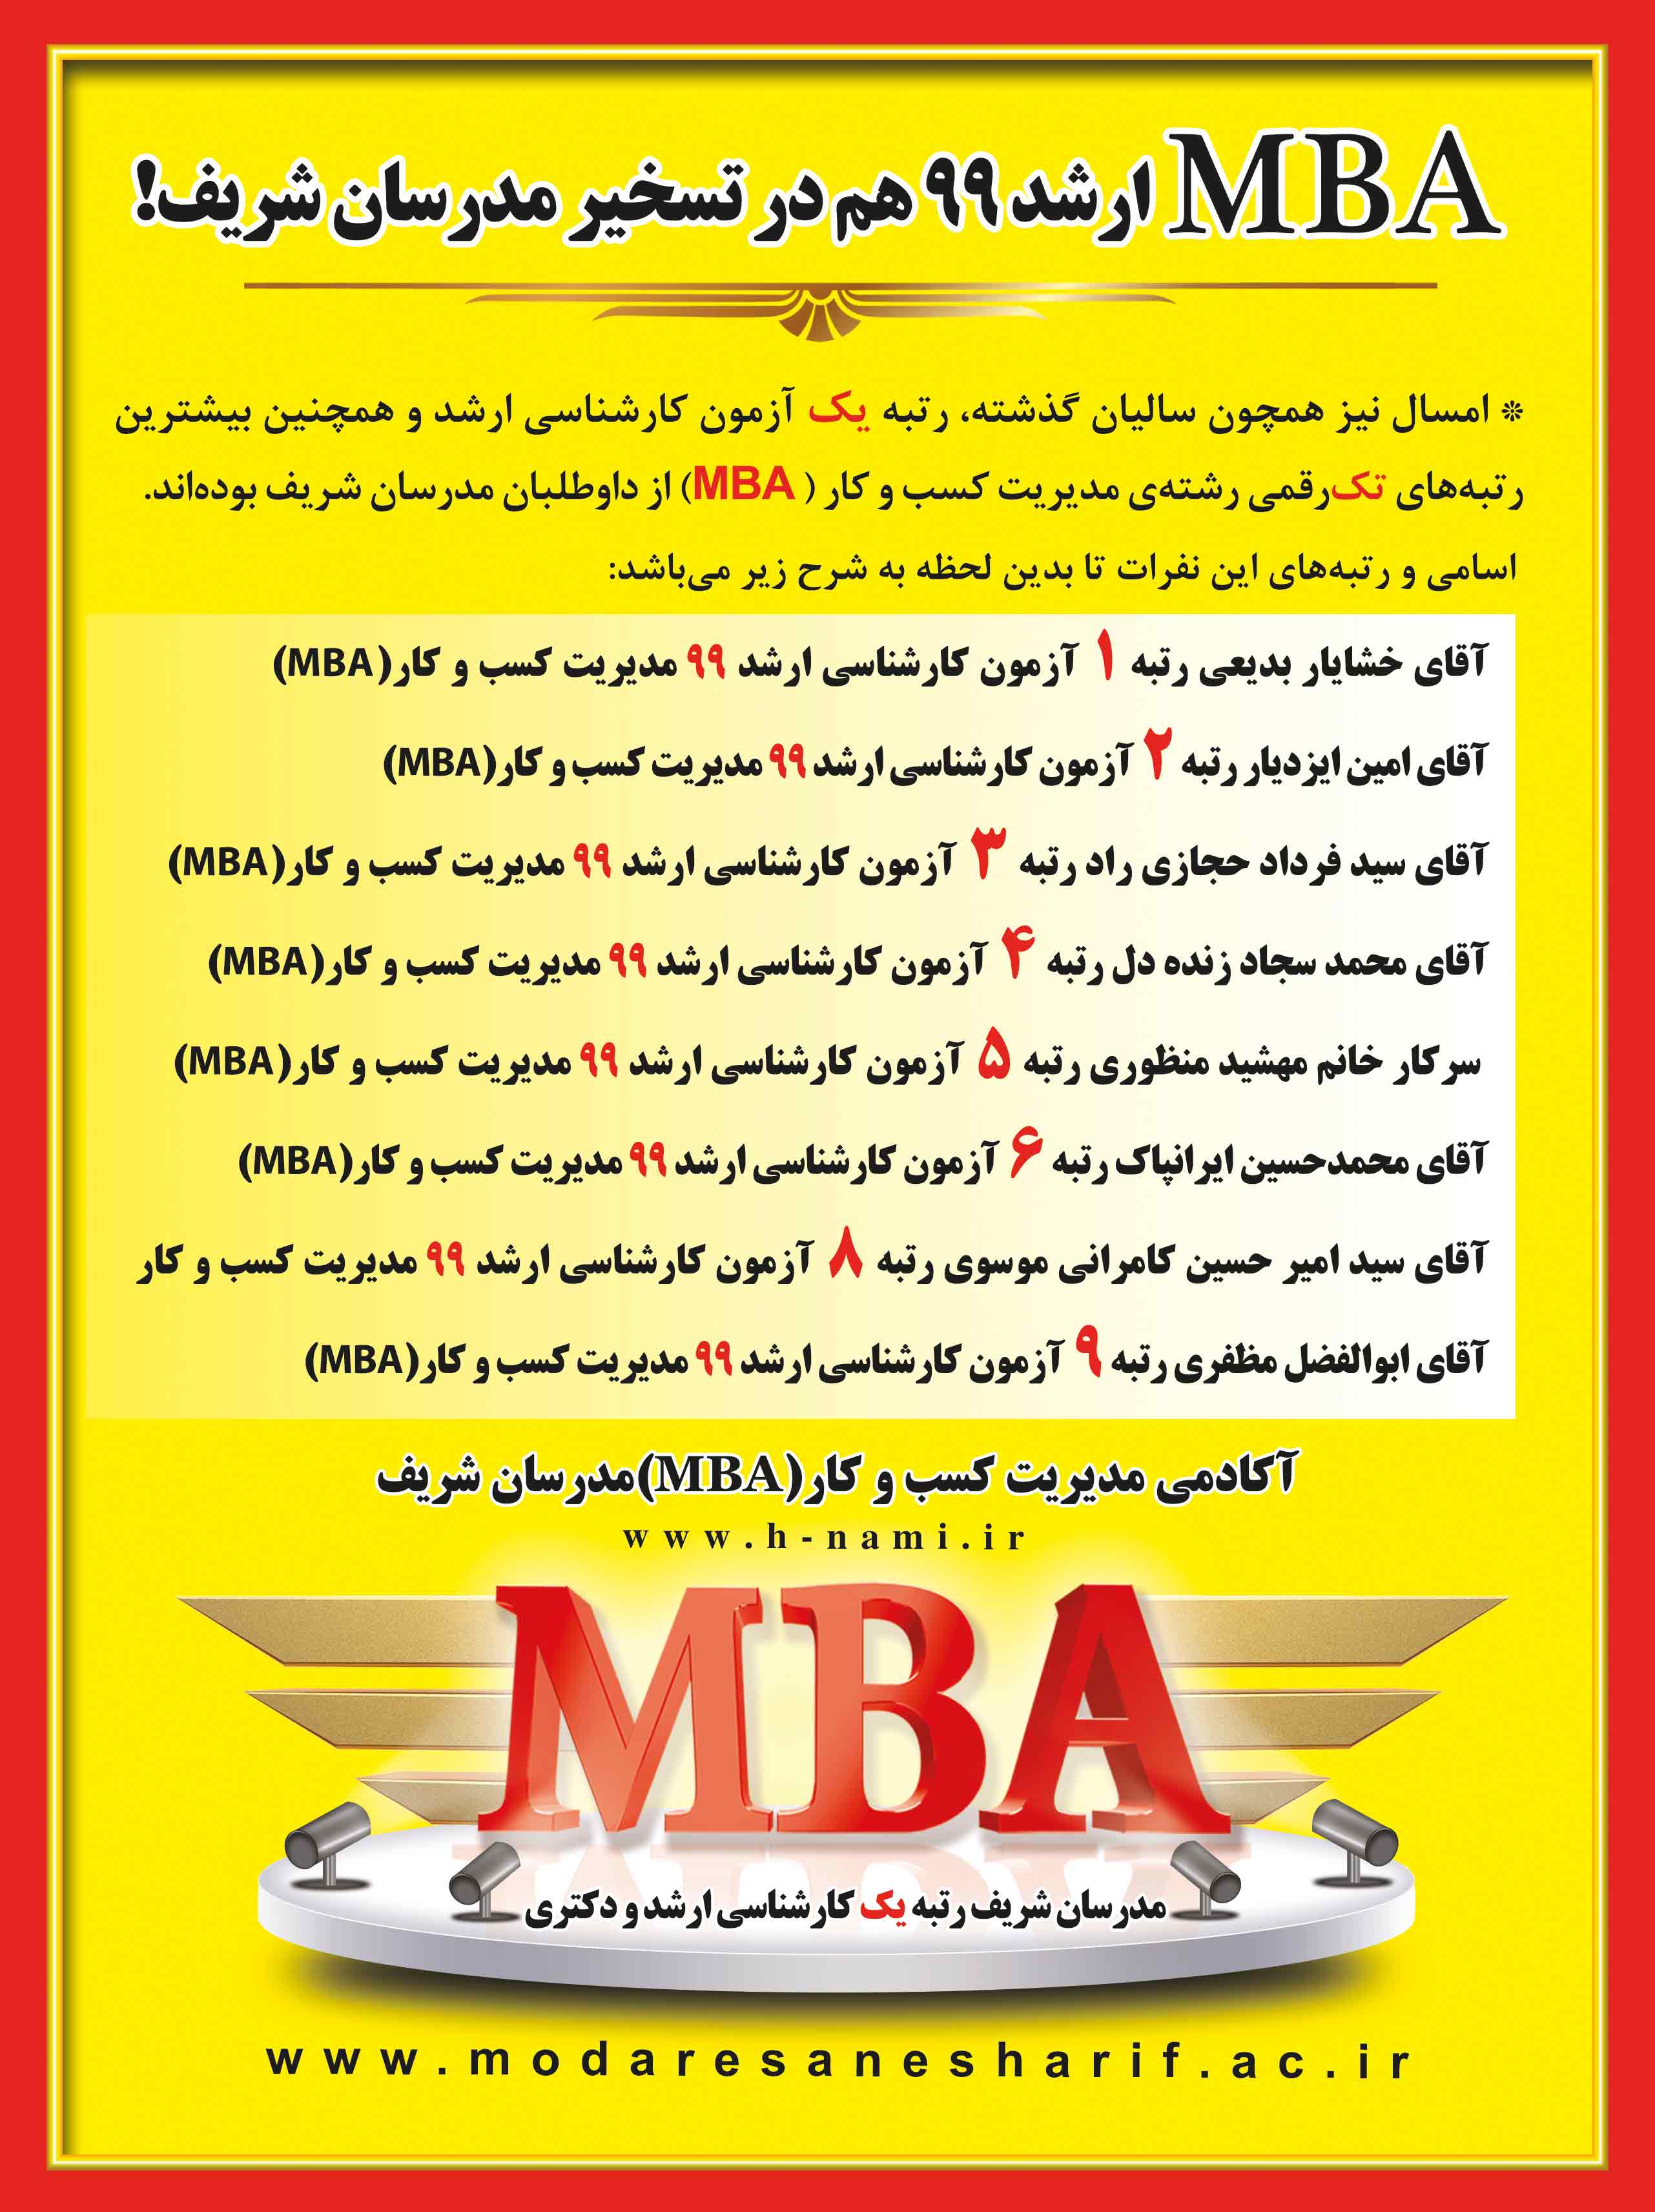 رتبه های برتر رشته مدیریت کسب و کار مدرسان شریف در سال 99(MBA)